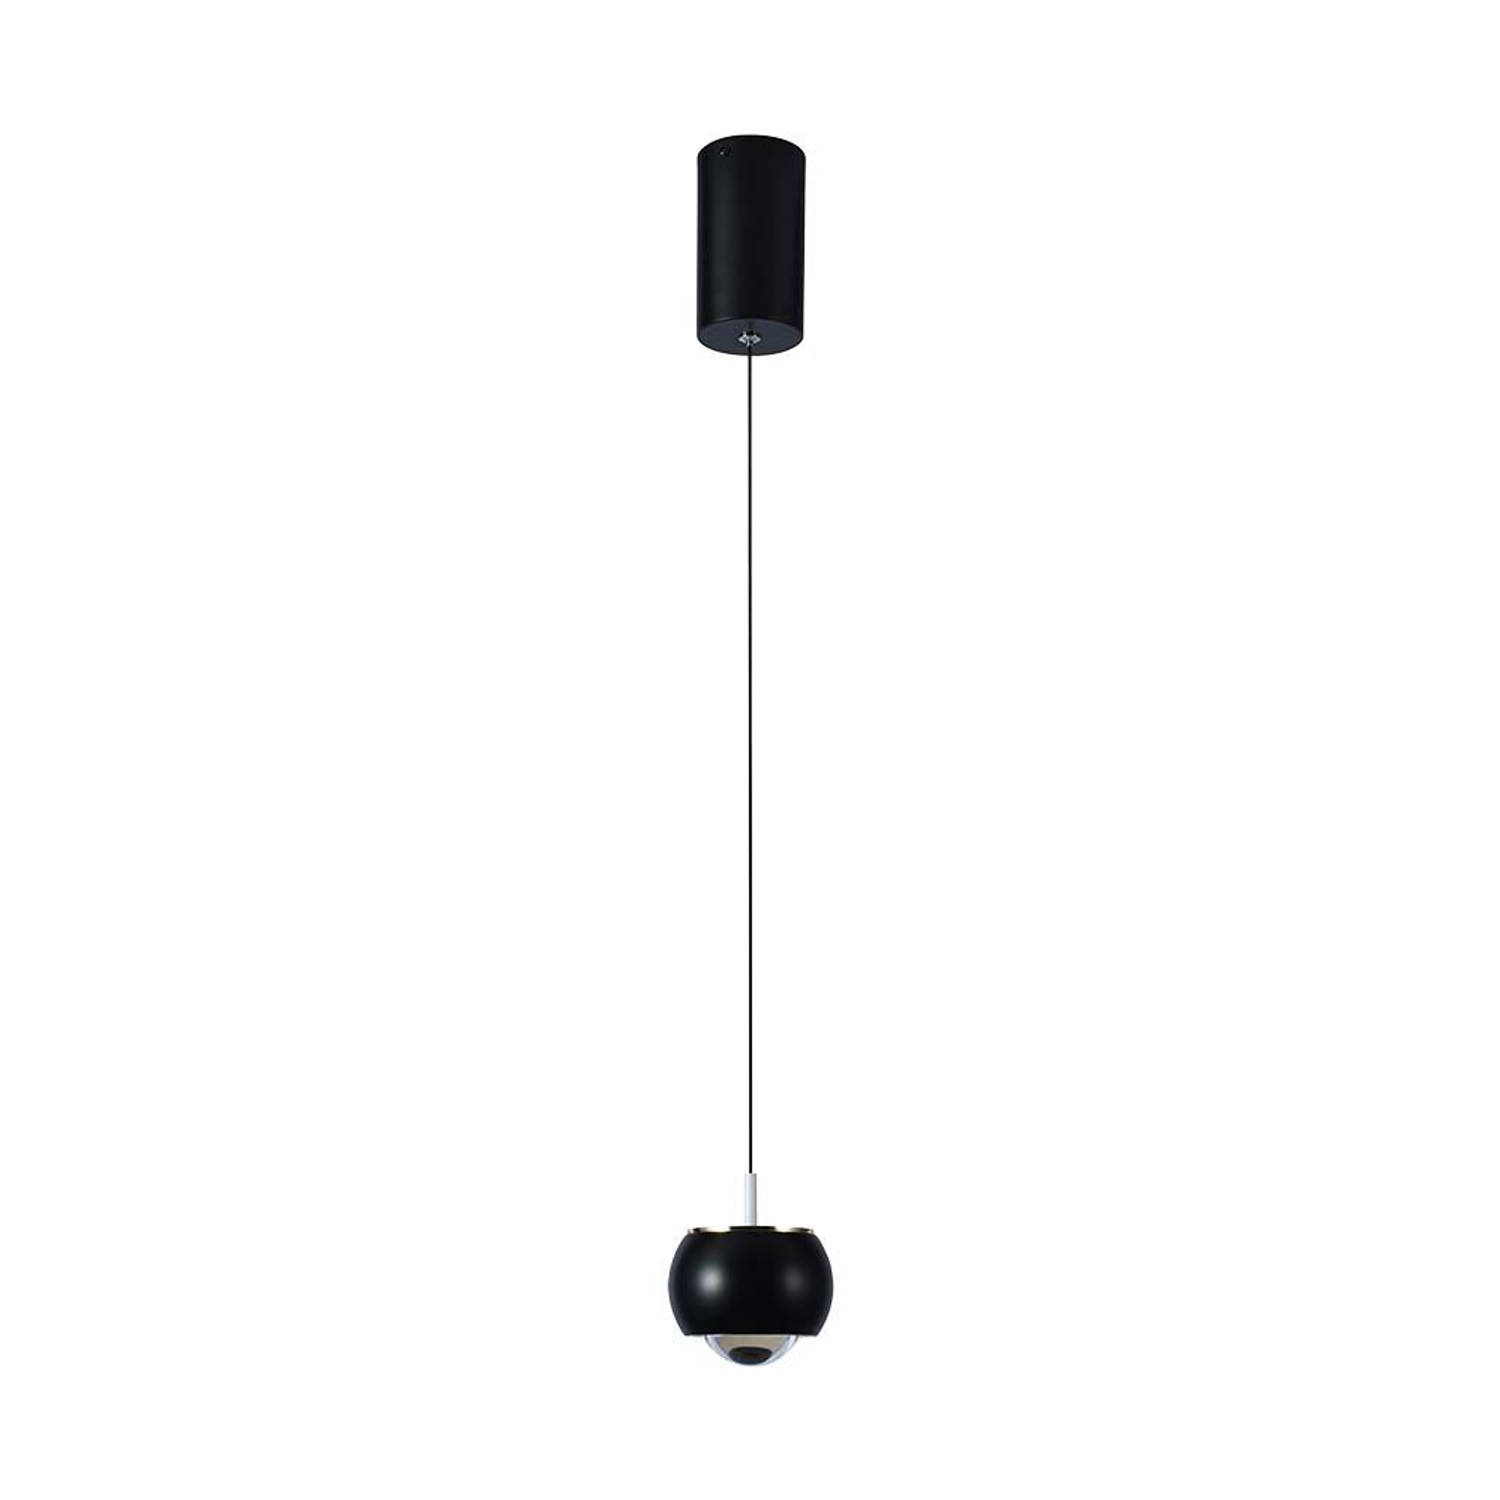 V-TAC VT-7830-B Designer plafondlampen - Designer hanglampen - IP20 - Zwarte behuizing - 9 watt - 1000 lumen - 3000K